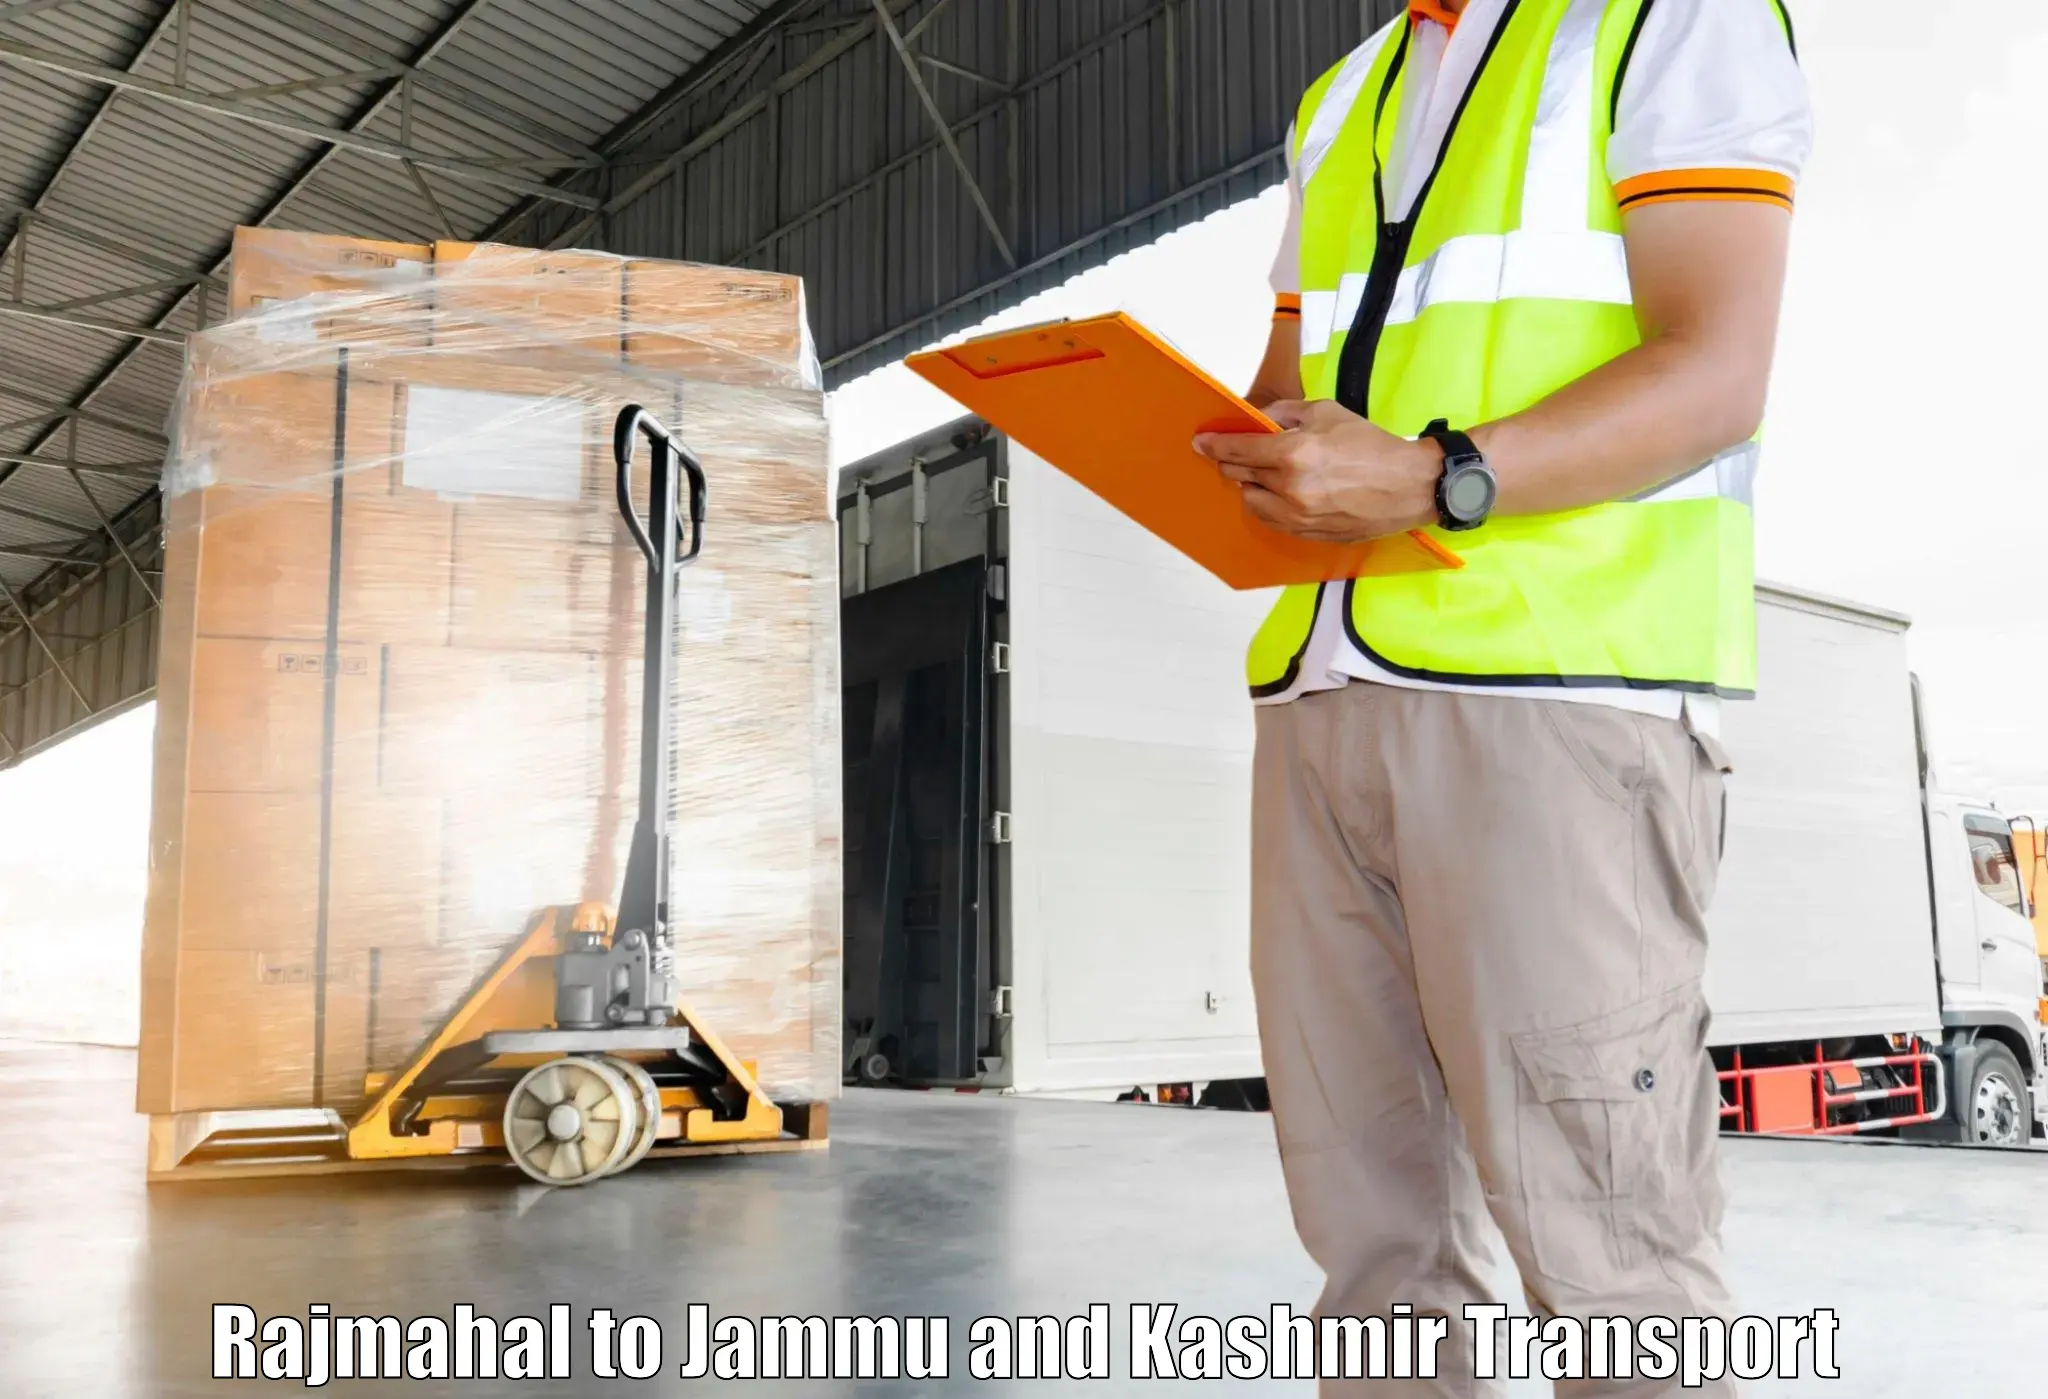 Transport in sharing Rajmahal to Kargil